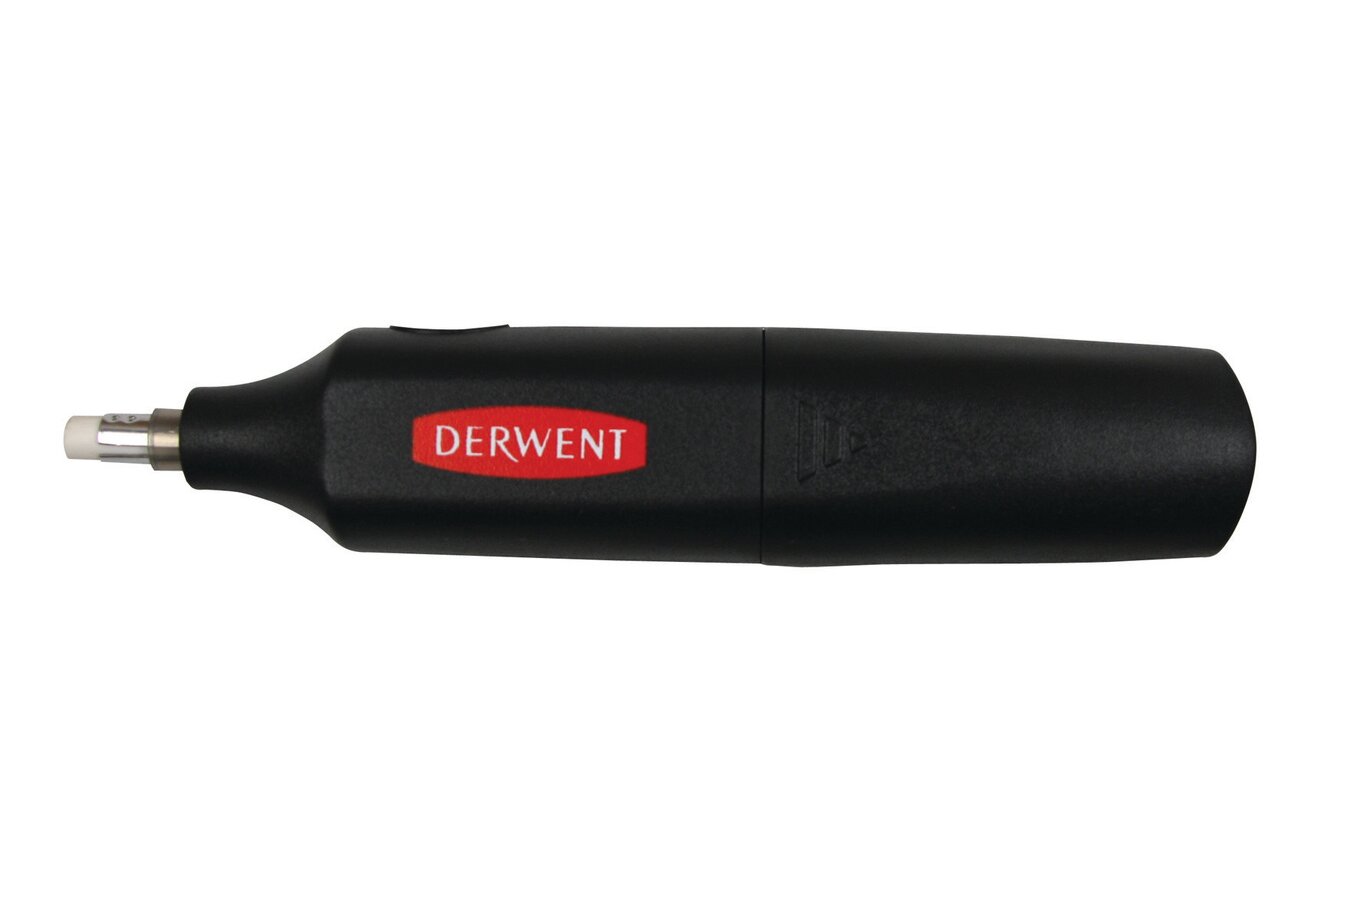  Derwent Retractable Eraser : Office Products